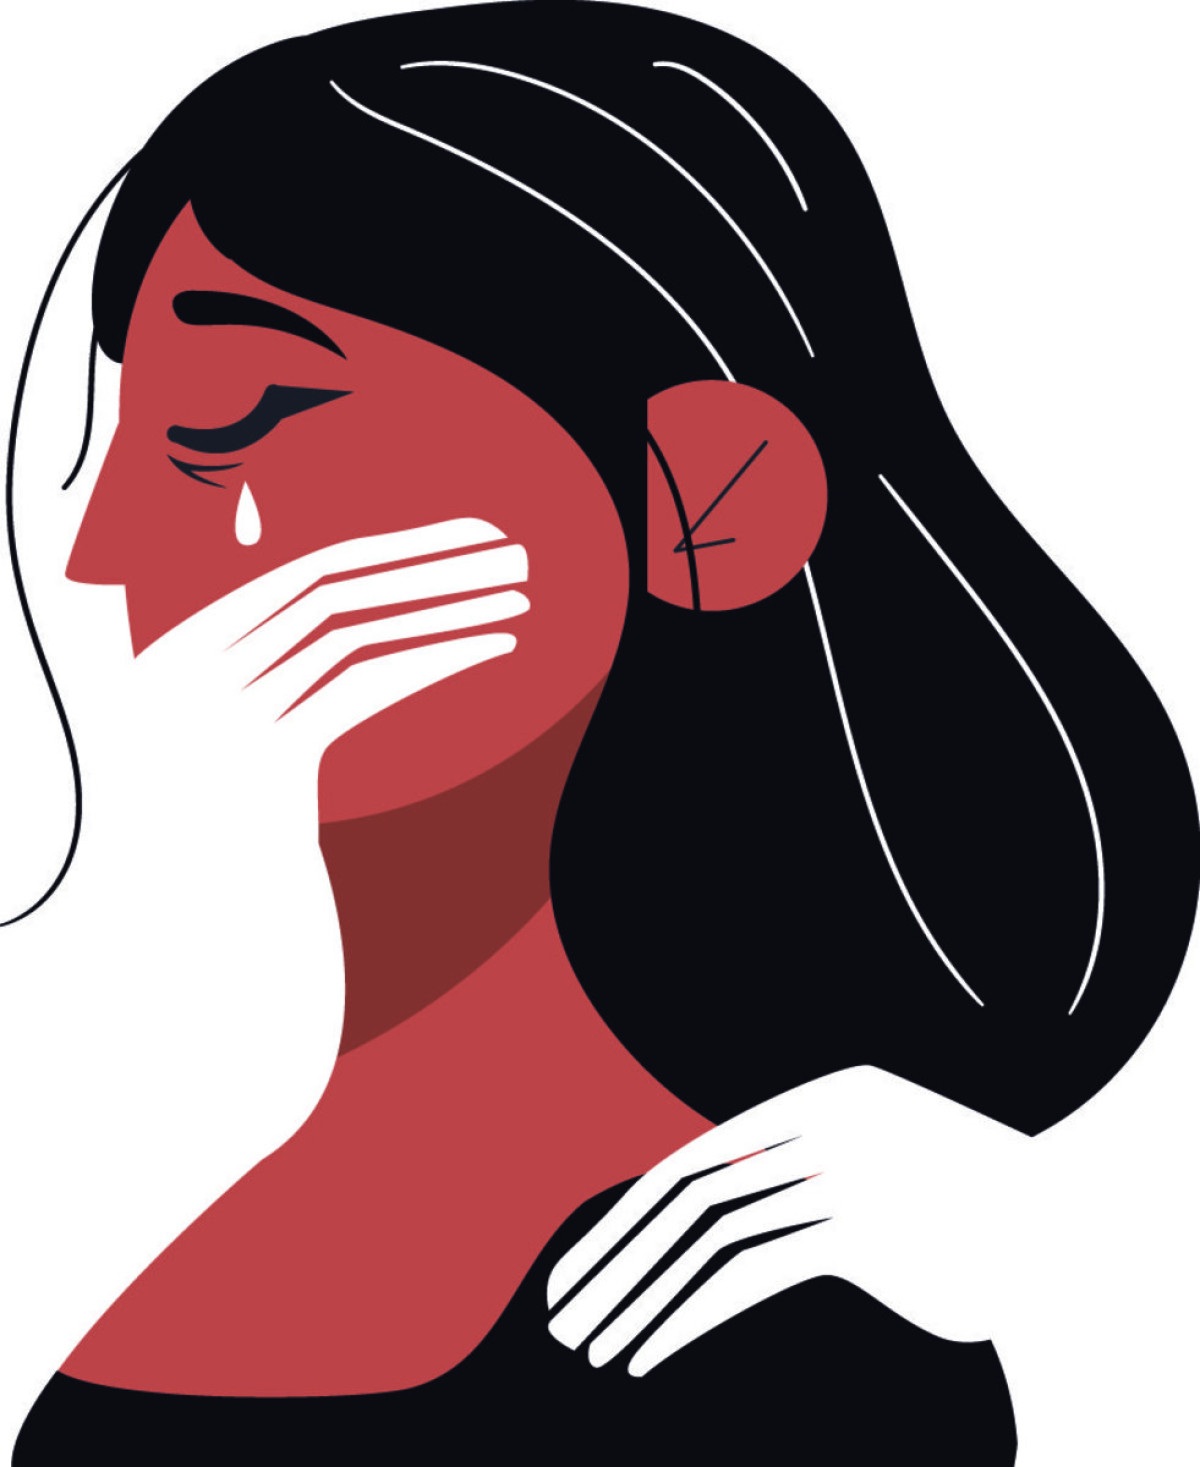 CFBM cria canal de denúncias para mulheres vítimas de assédio no trabalho